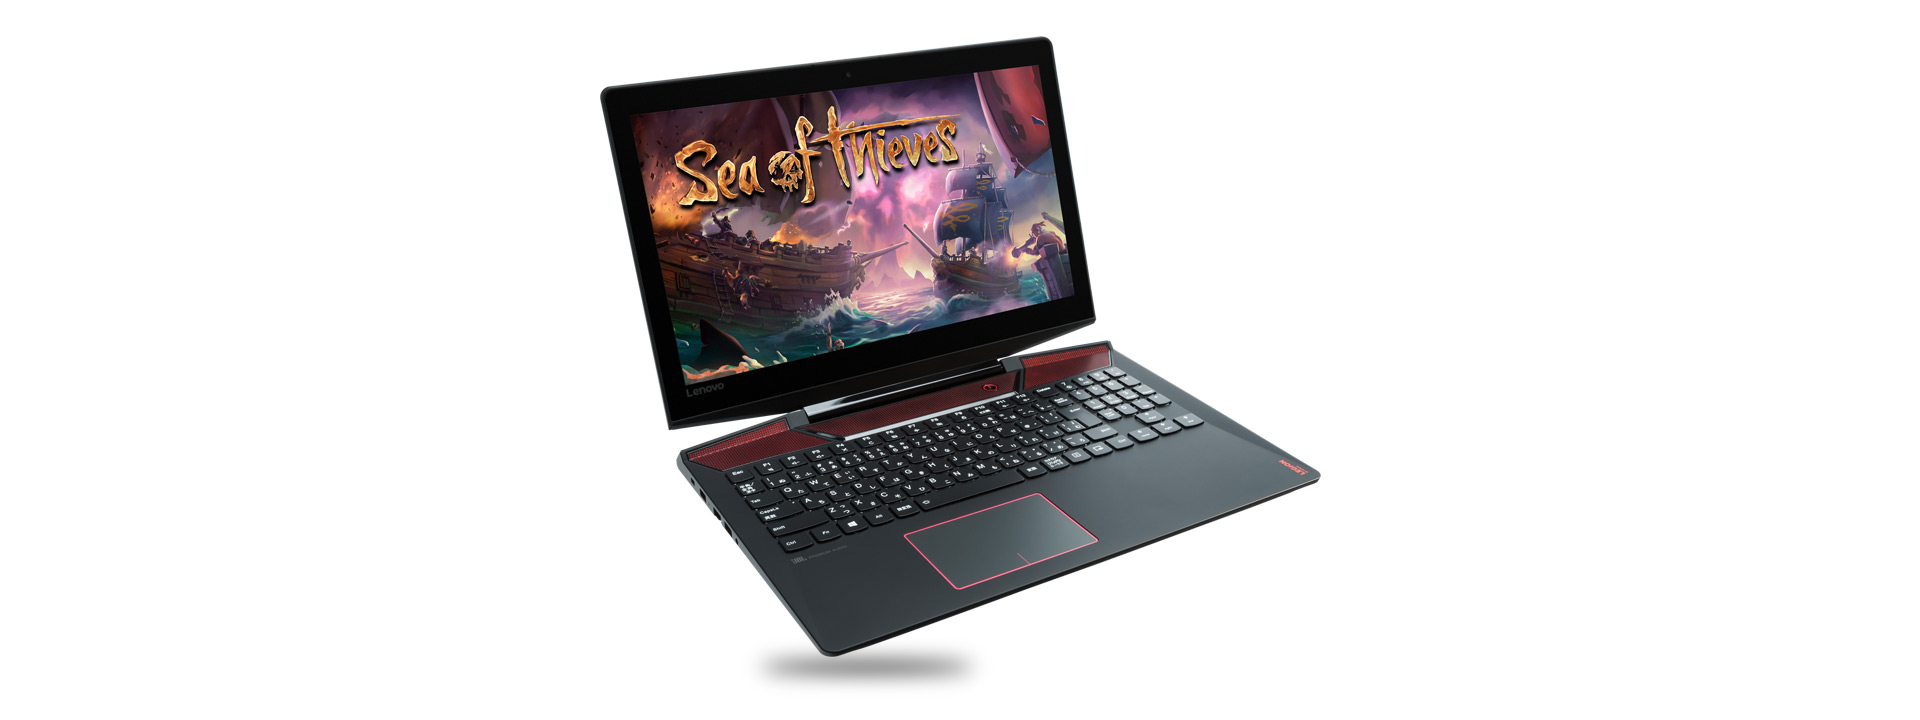 Herní laptop zobrazující hru Sea of Thieves (Moře zlodějů).